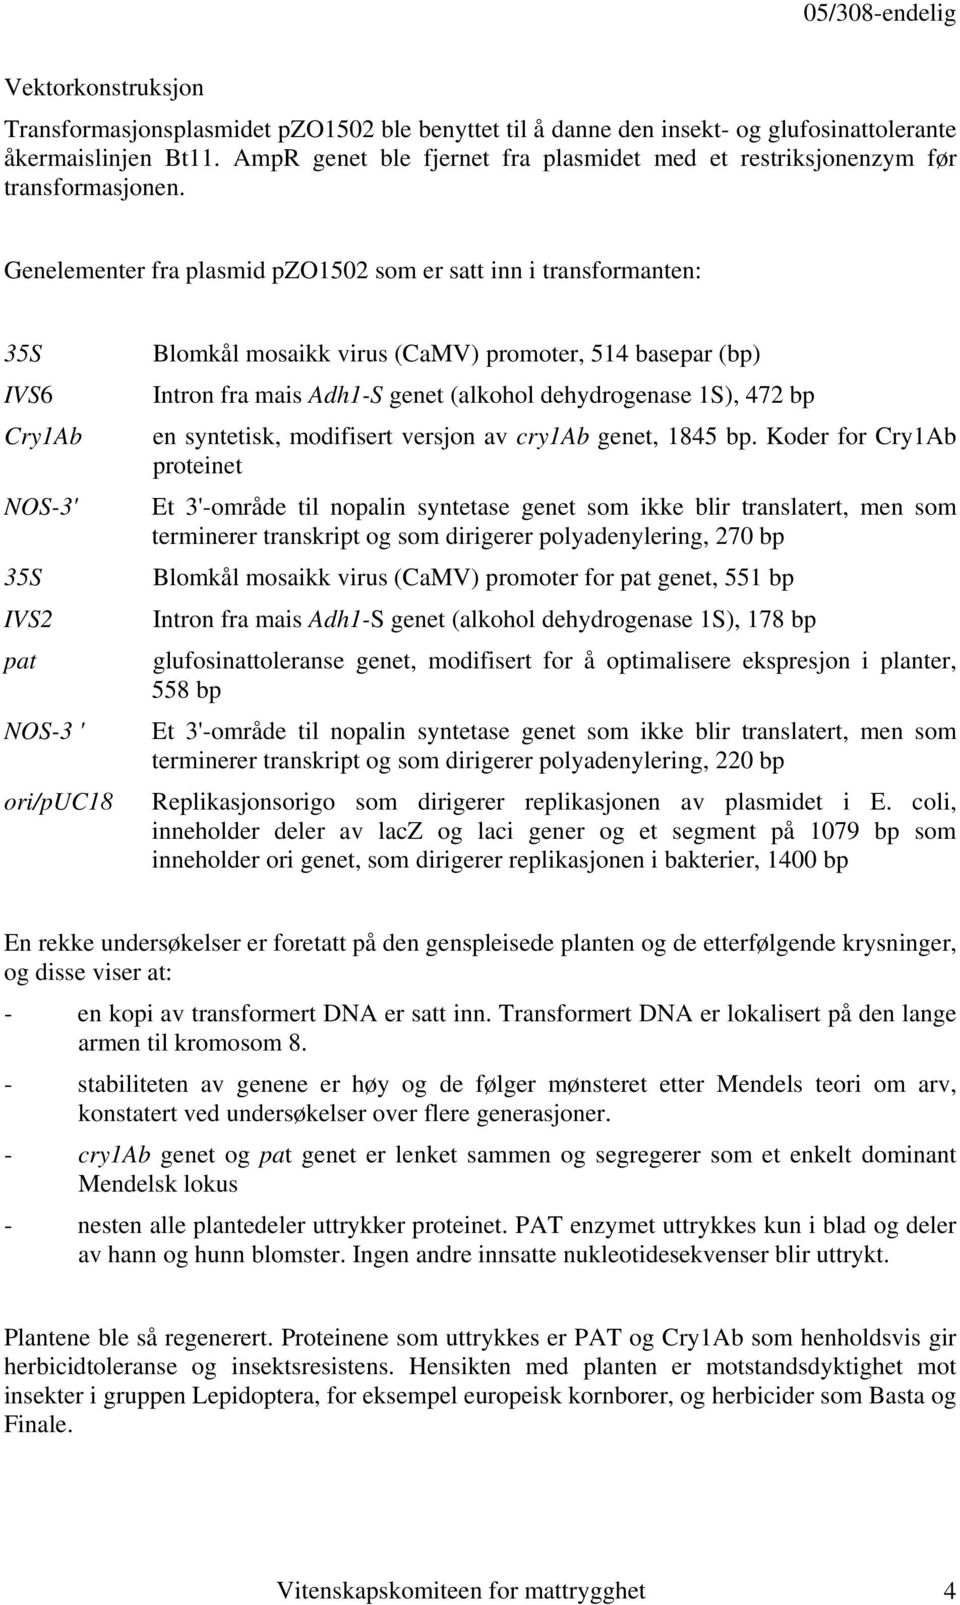 Genelementer fra plasmid pzo1502 som er satt inn i transformanten: 35S IVS6 Cry1Ab NOS-3' 35S IVS2 pat NOS-3 ' ori/puc18 Blomkål mosaikk virus (CaMV) promoter, 514 basepar (bp) Intron fra mais Adh1-S